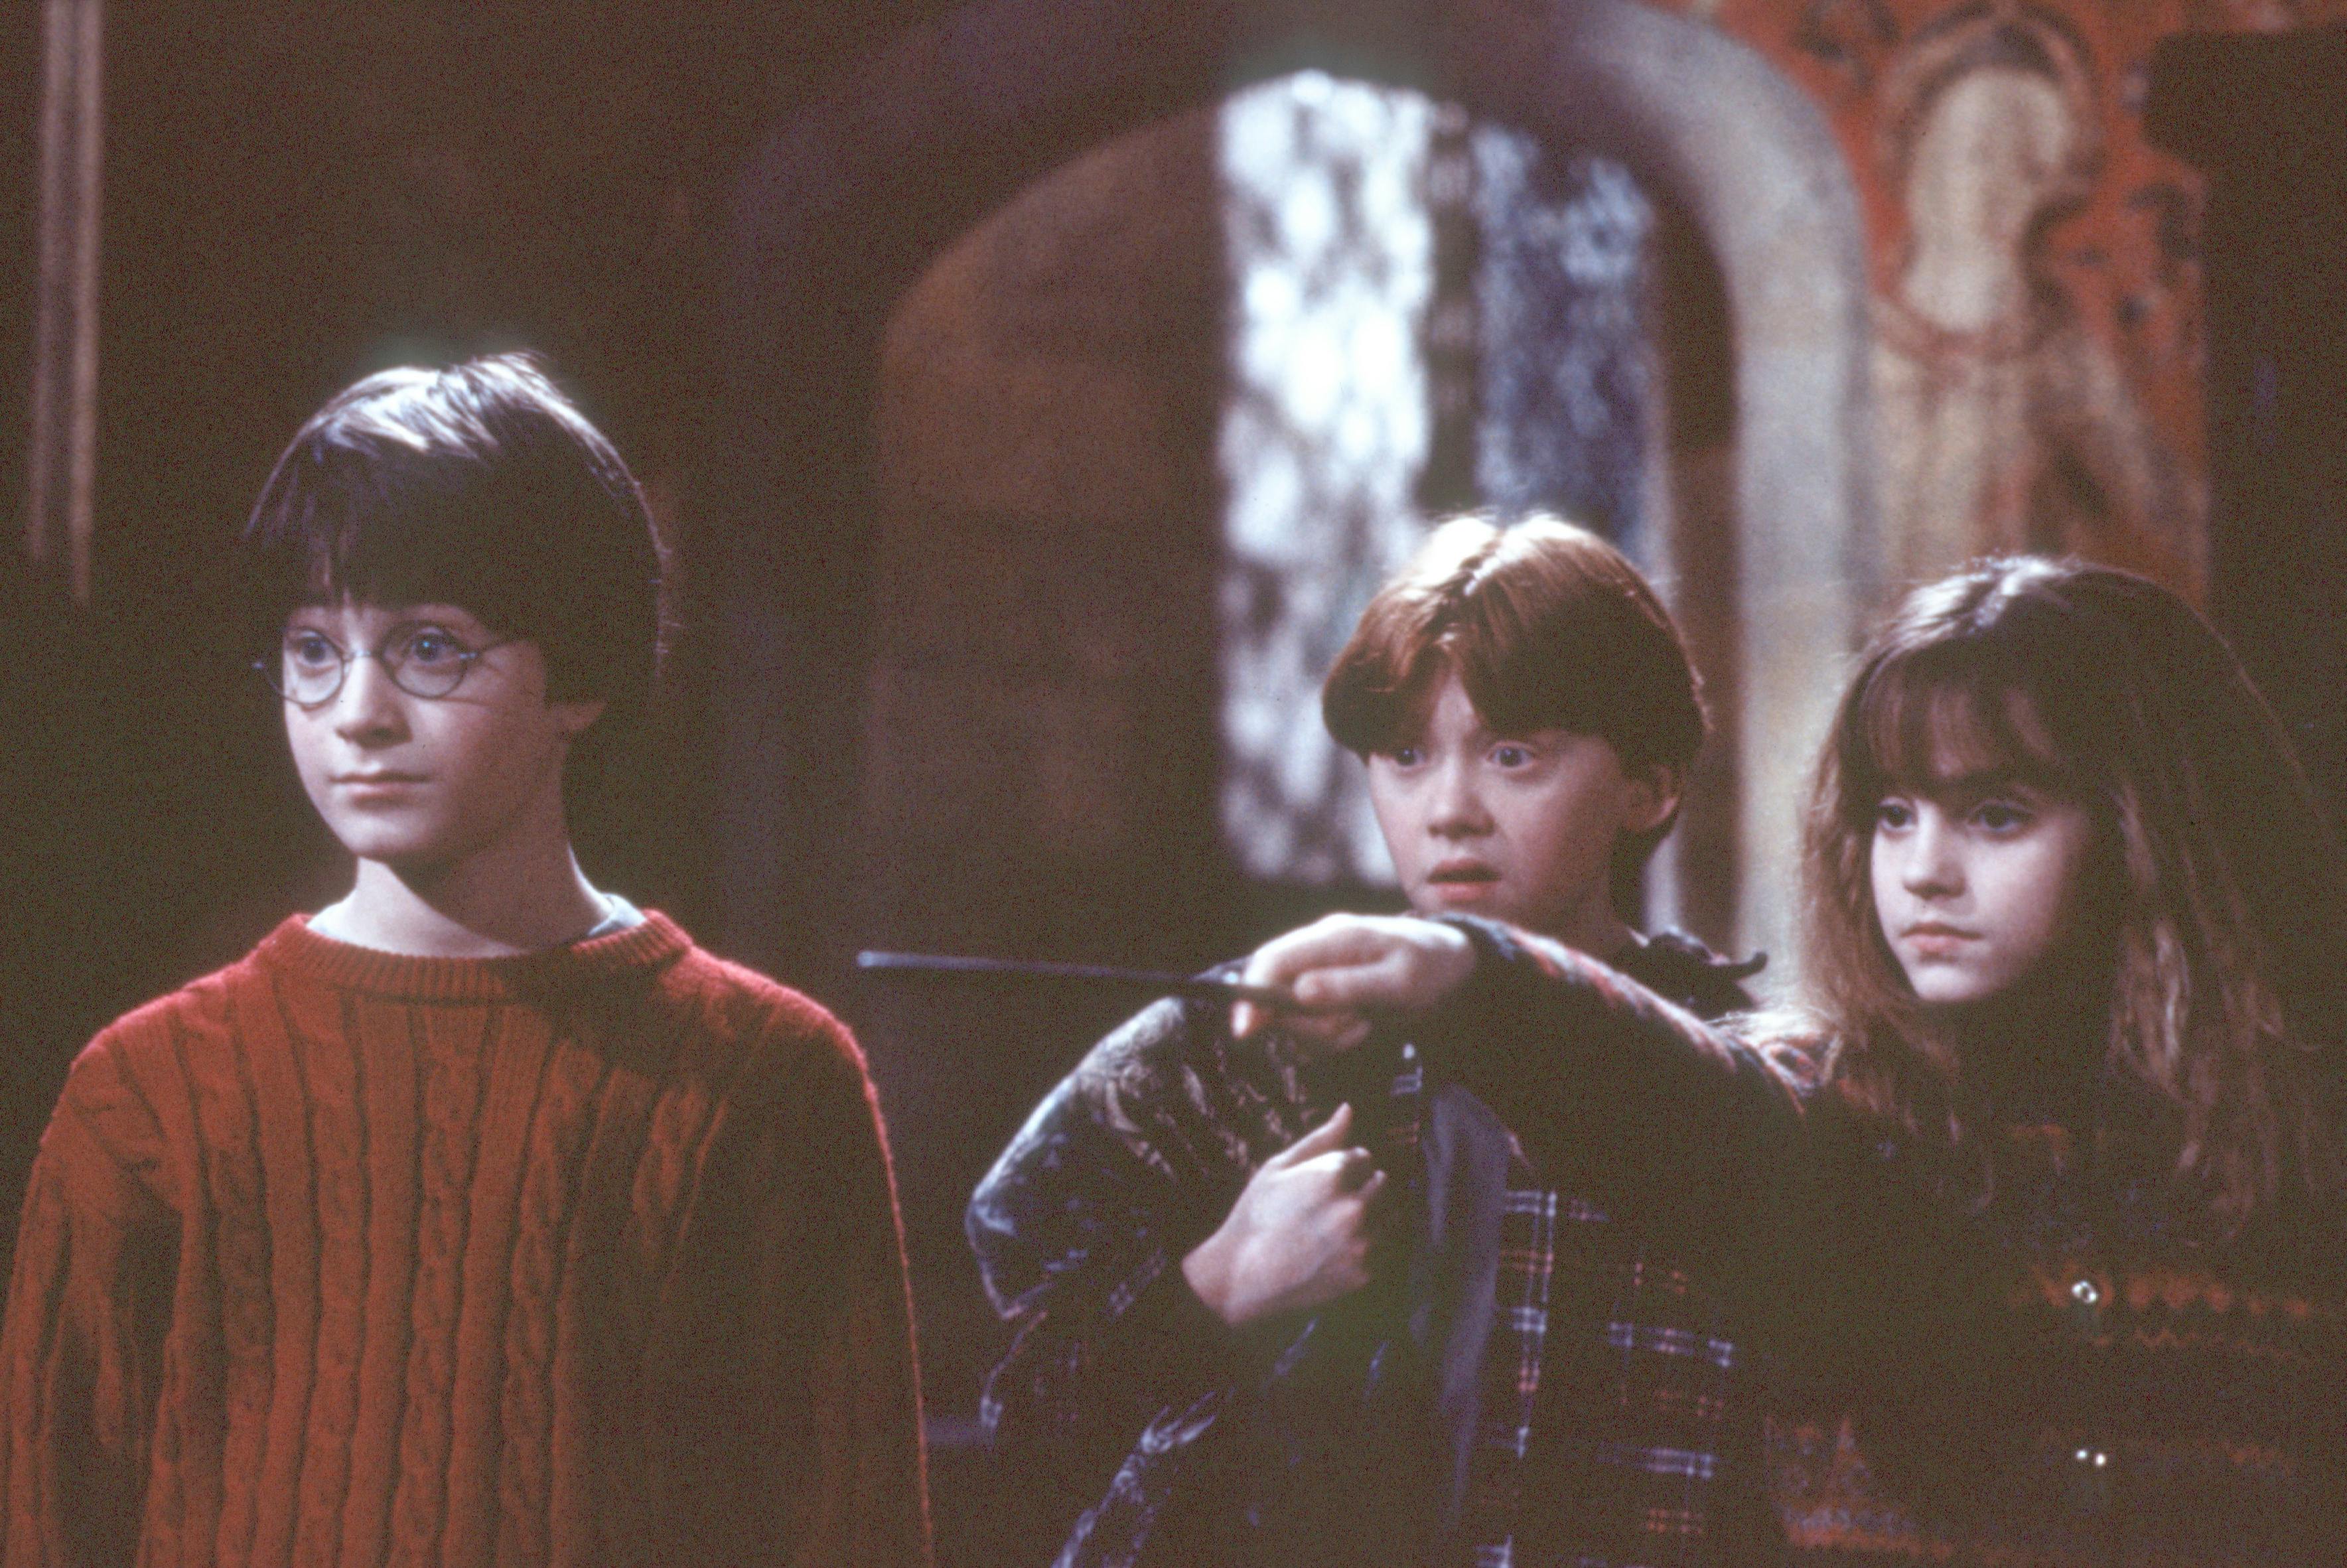 Daniel Radcliffe, Rupert Grint og Emma Watson i rollerne som Harry Potter, Ron Weasley og Hermione Granger. 